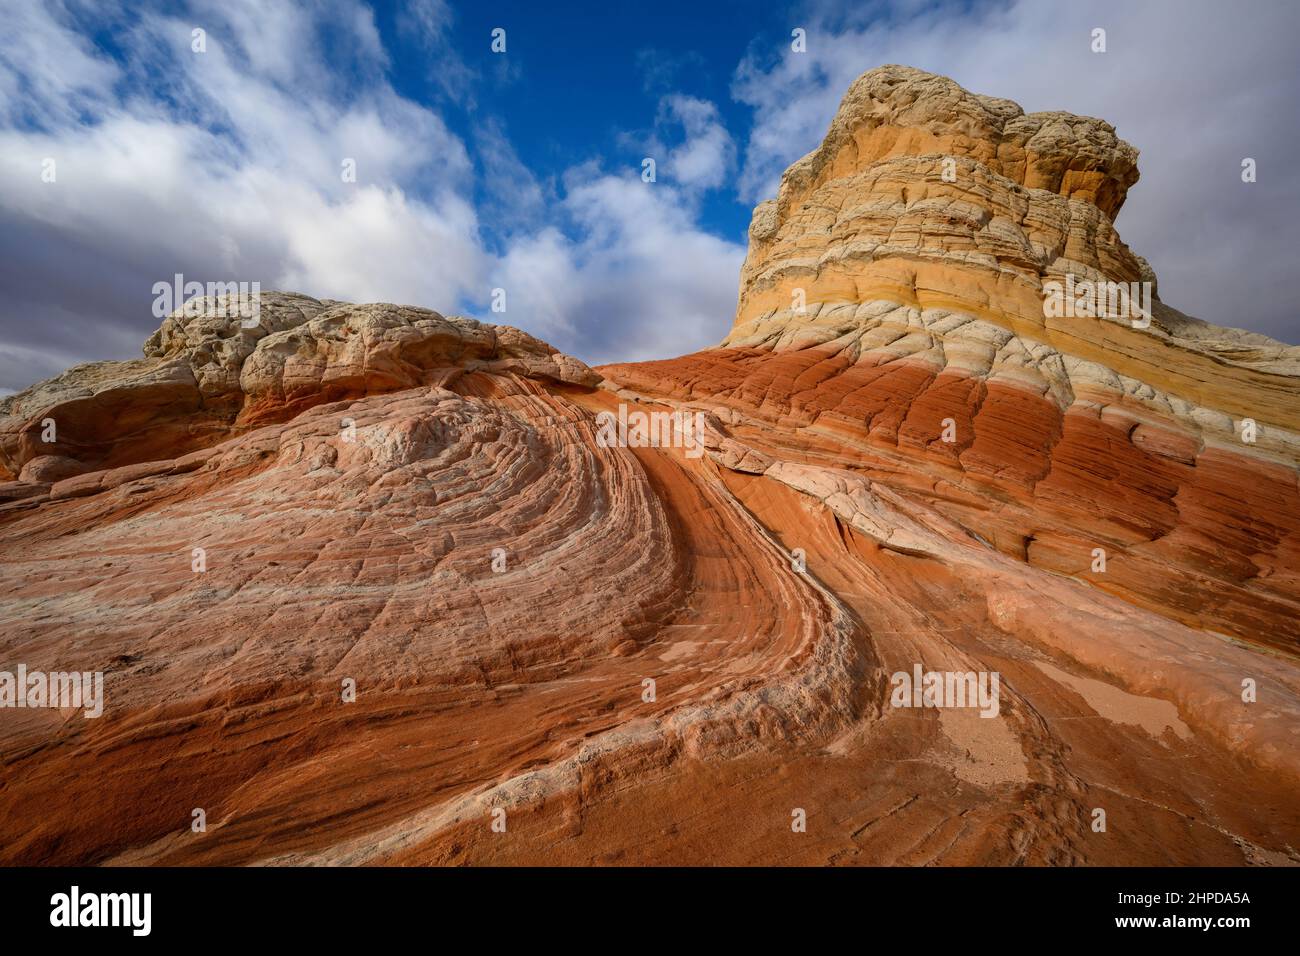 Formations de grès à White Pocket, monument national de Vermillion Cliffs, Arizona. Banque D'Images